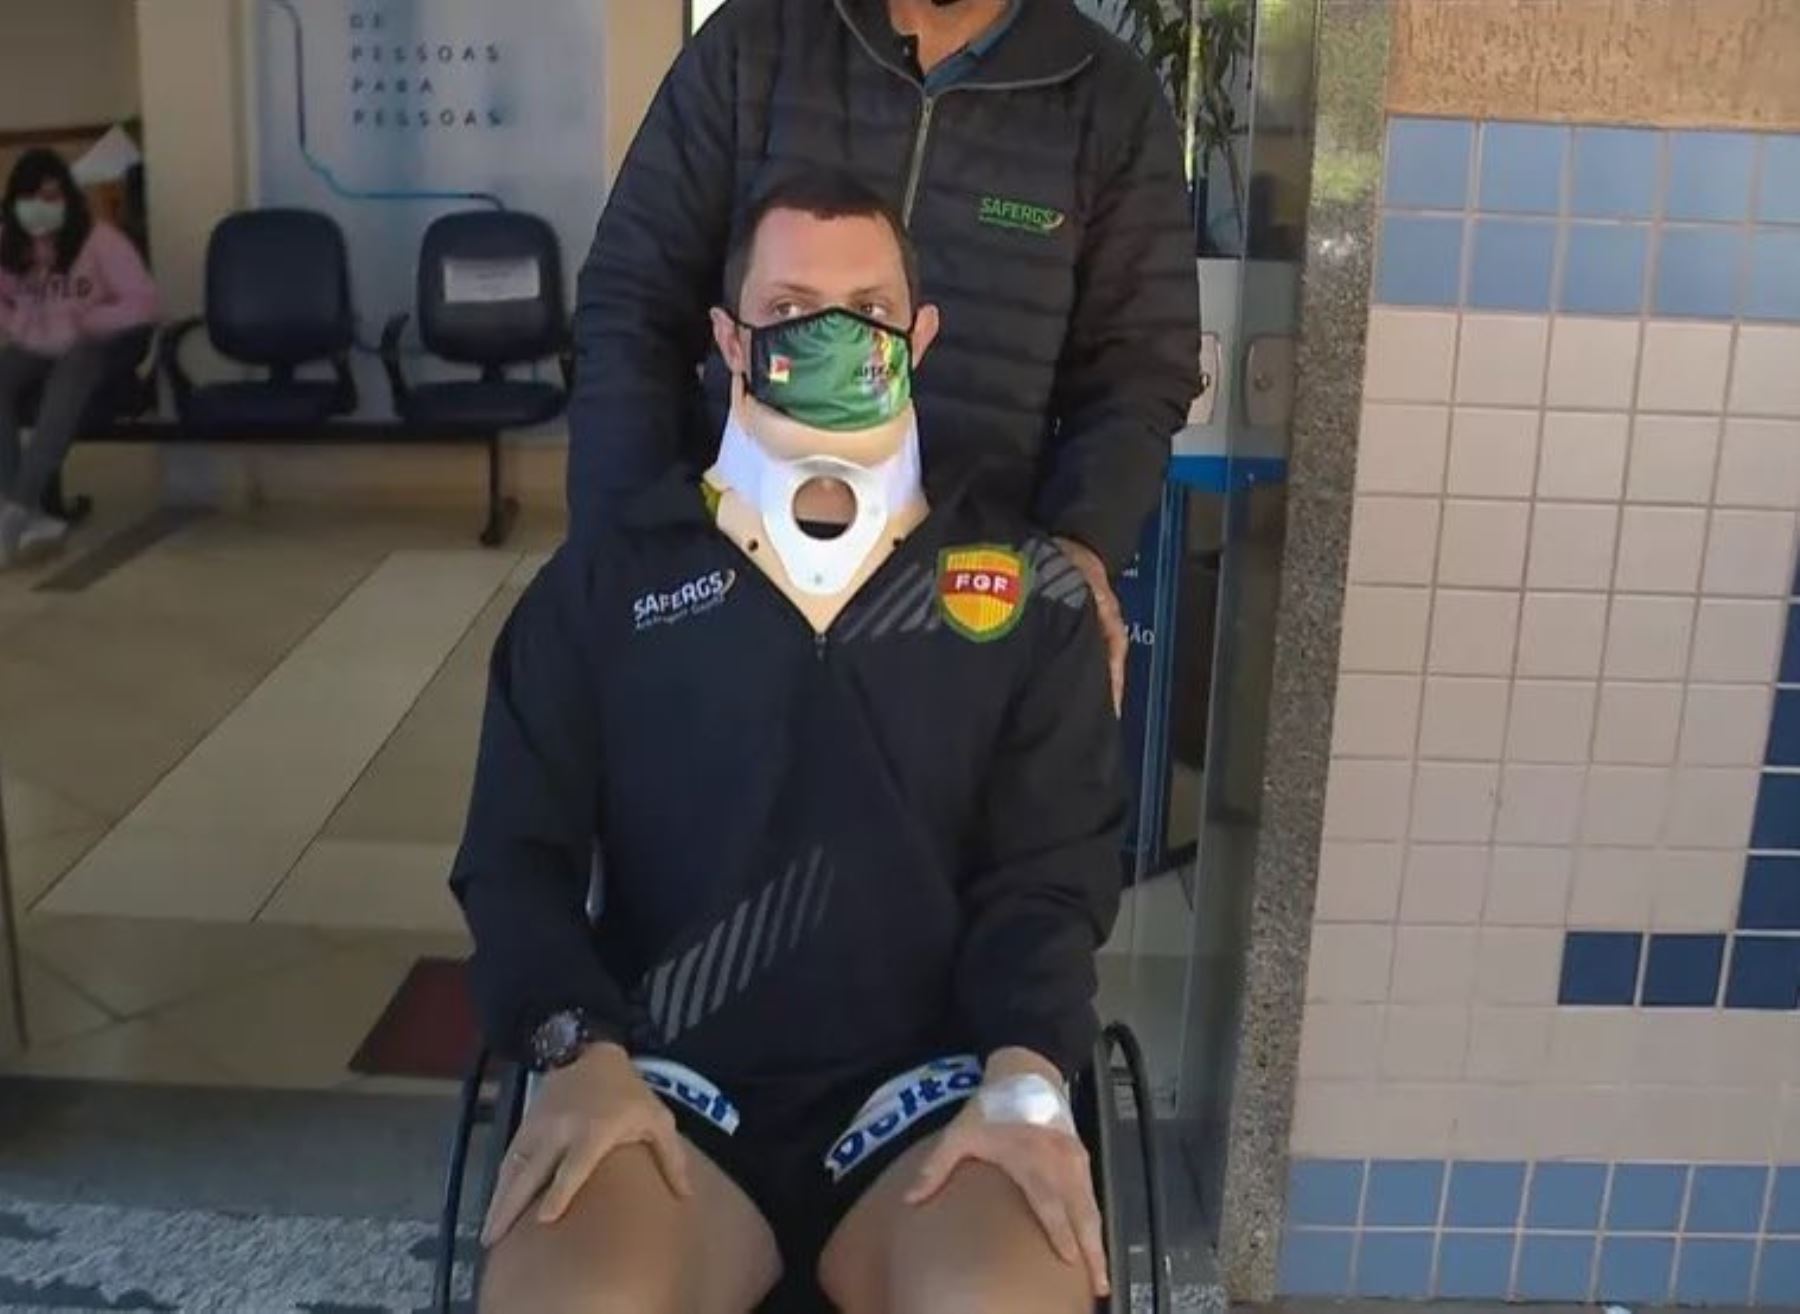 El árbitro Rodrigo Crivellaro sale del hospital luego de haber ingresar desmayado